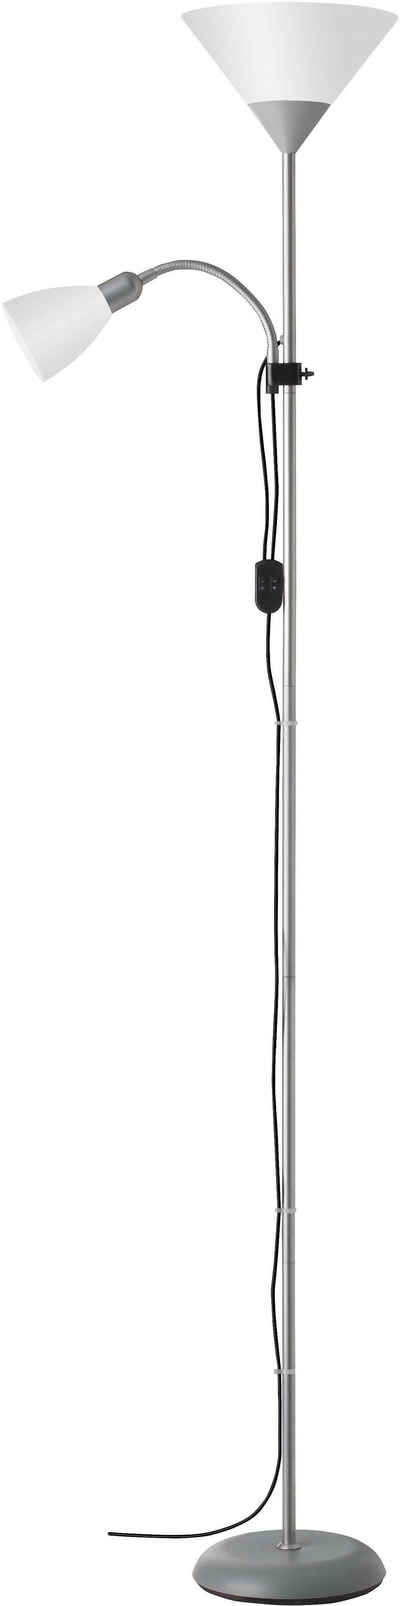 Brilliant Deckenfluter SPARI, ohne Leuchtmittel, 180 cm Höhe, Ø 25 cm, E27 + E14, Aluminium/Kunststoff, schwarz/weiß